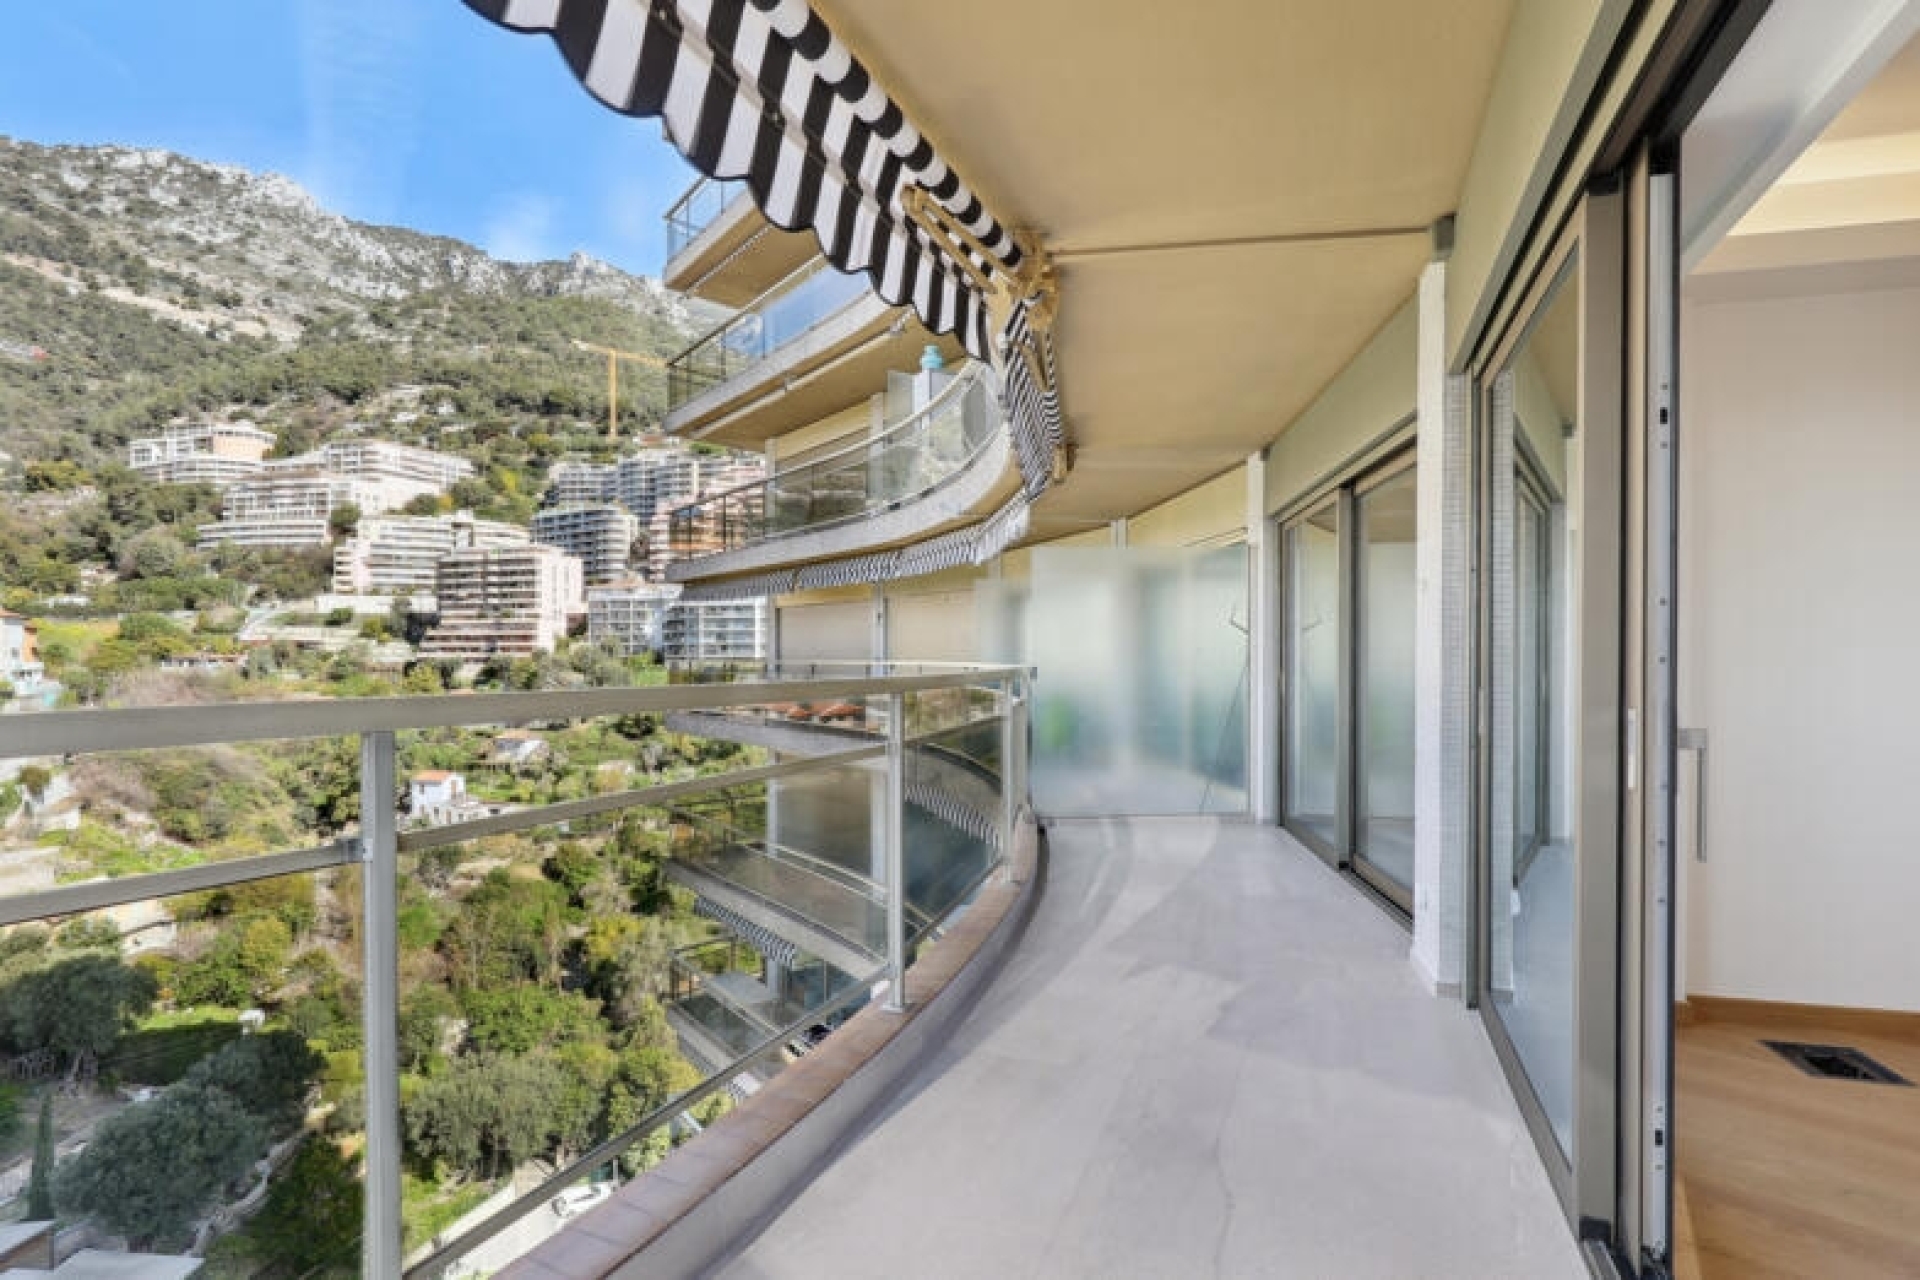 Dotta Appartement de 4 pieces a vendre - ANNONCIADE - La Rousse - Monaco - img19